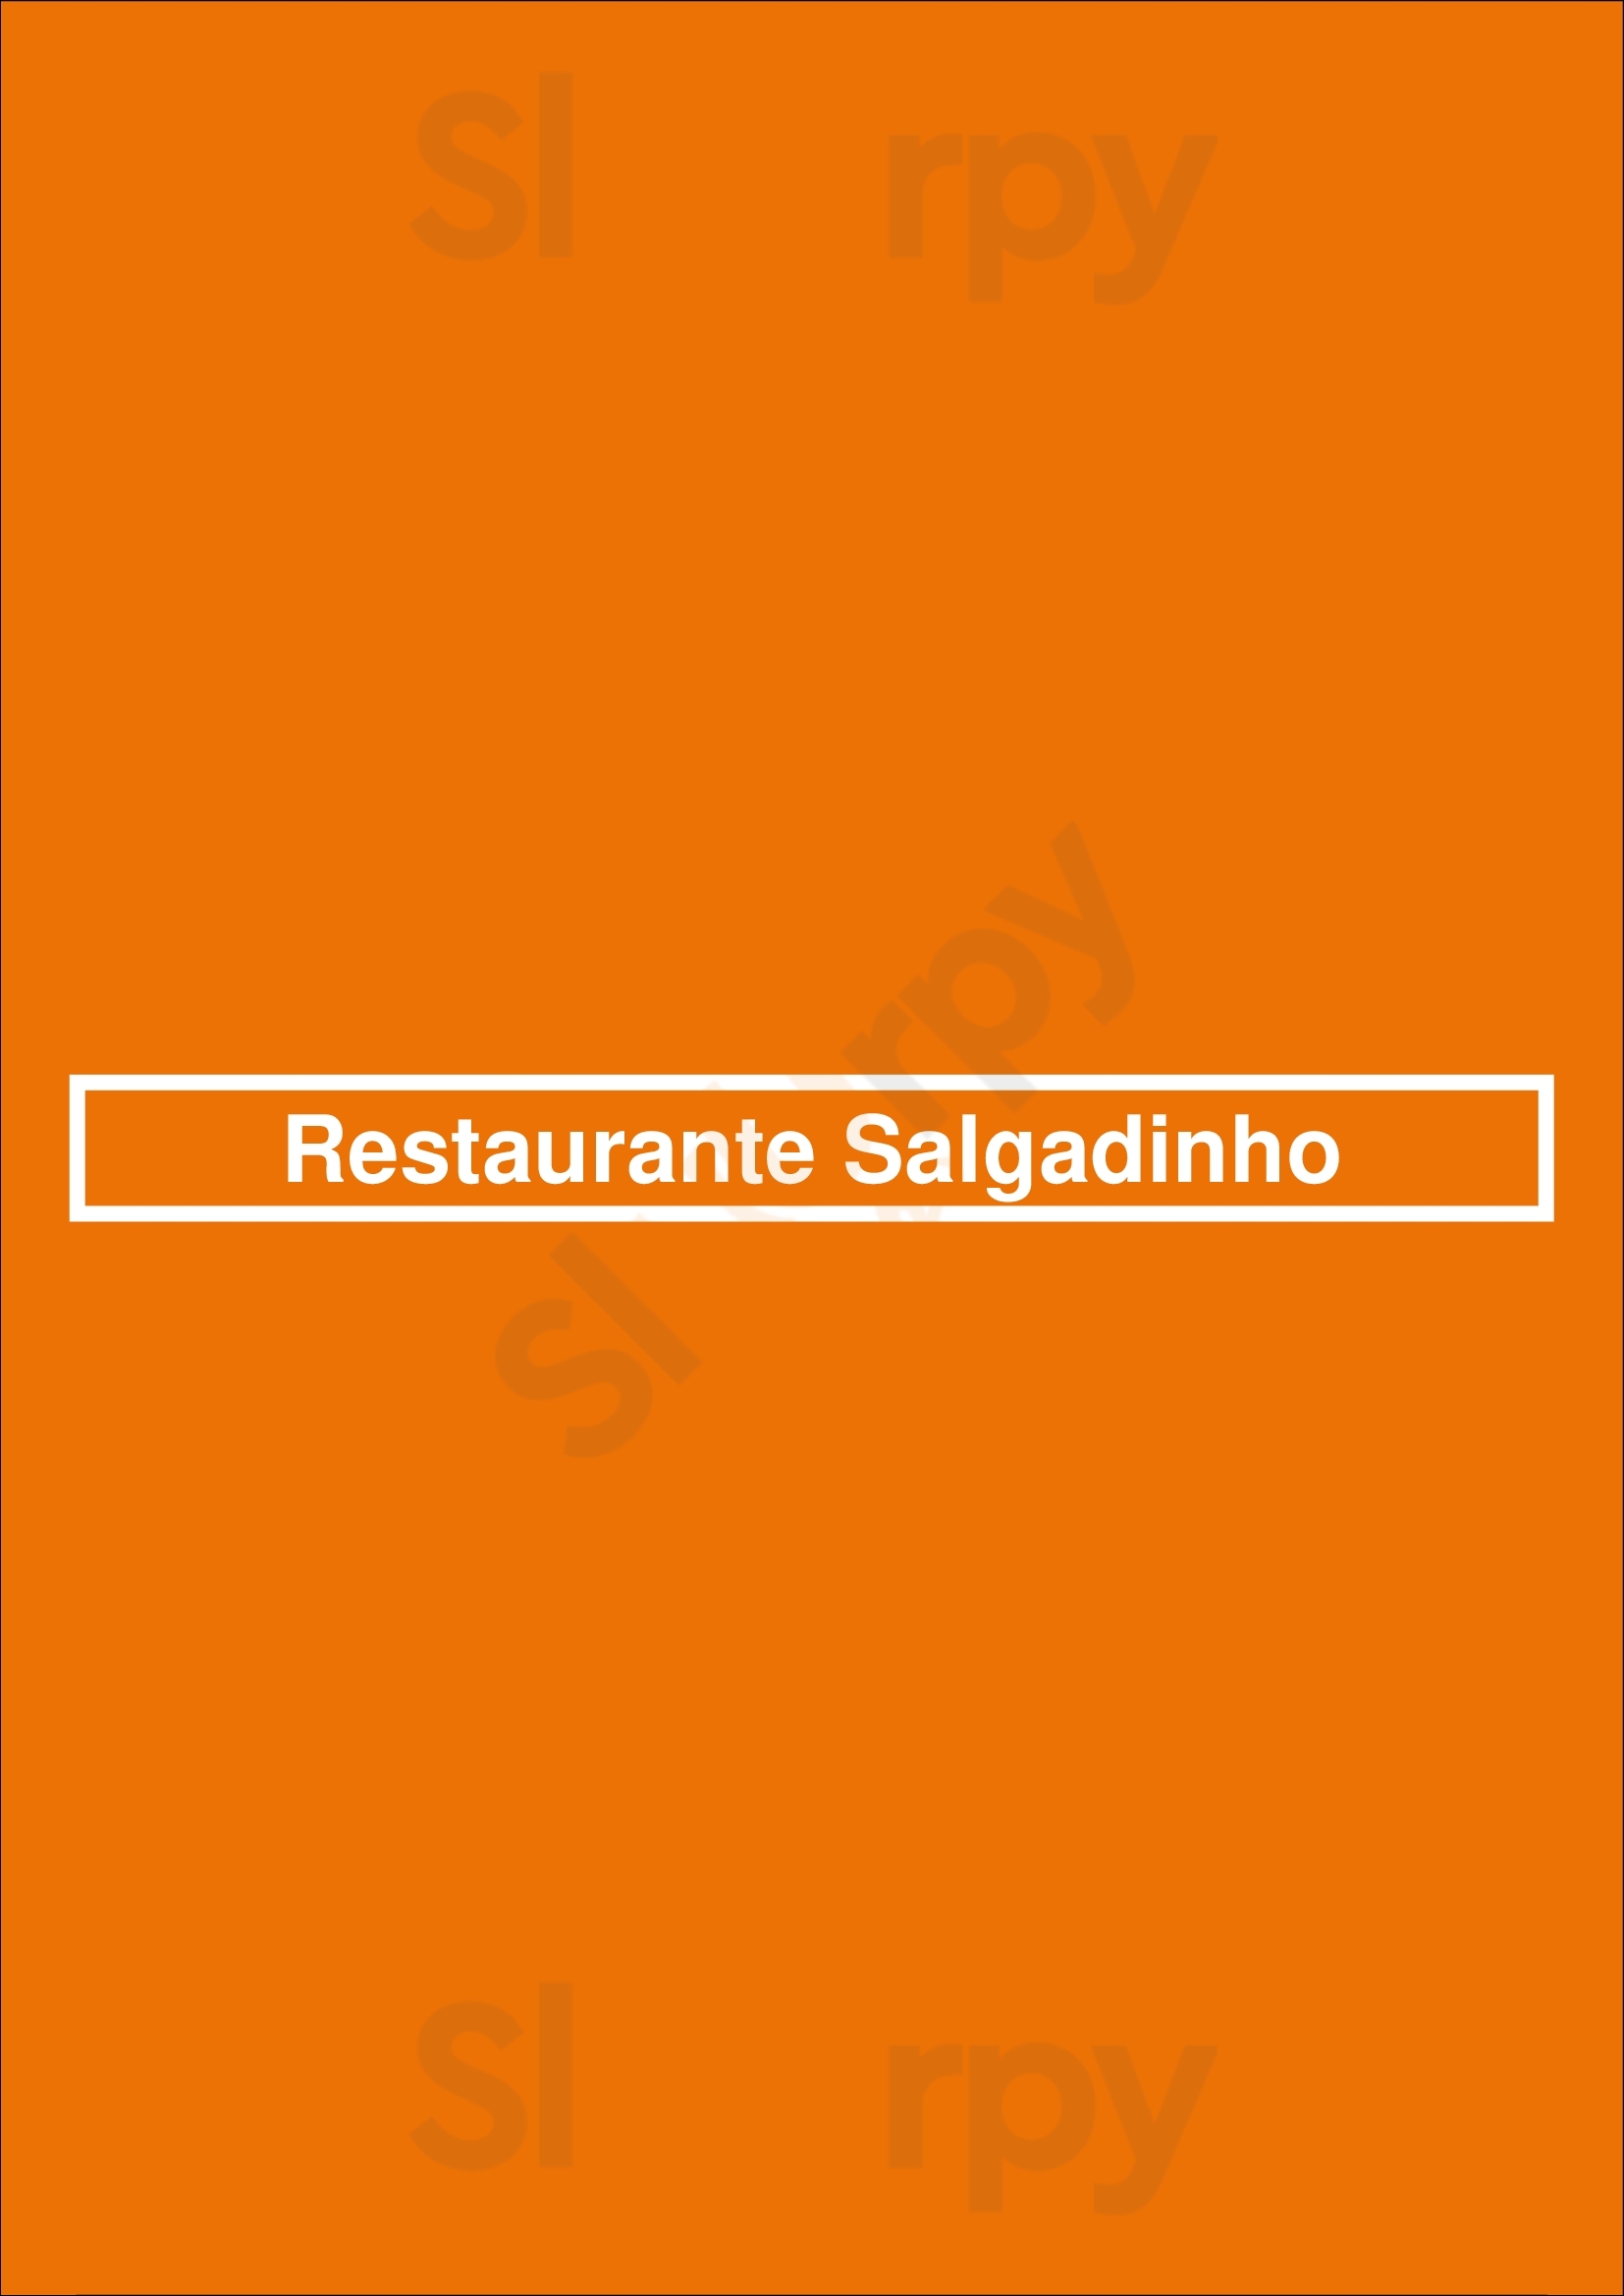 Restaurante Salgadinho Quarteira Menu - 1